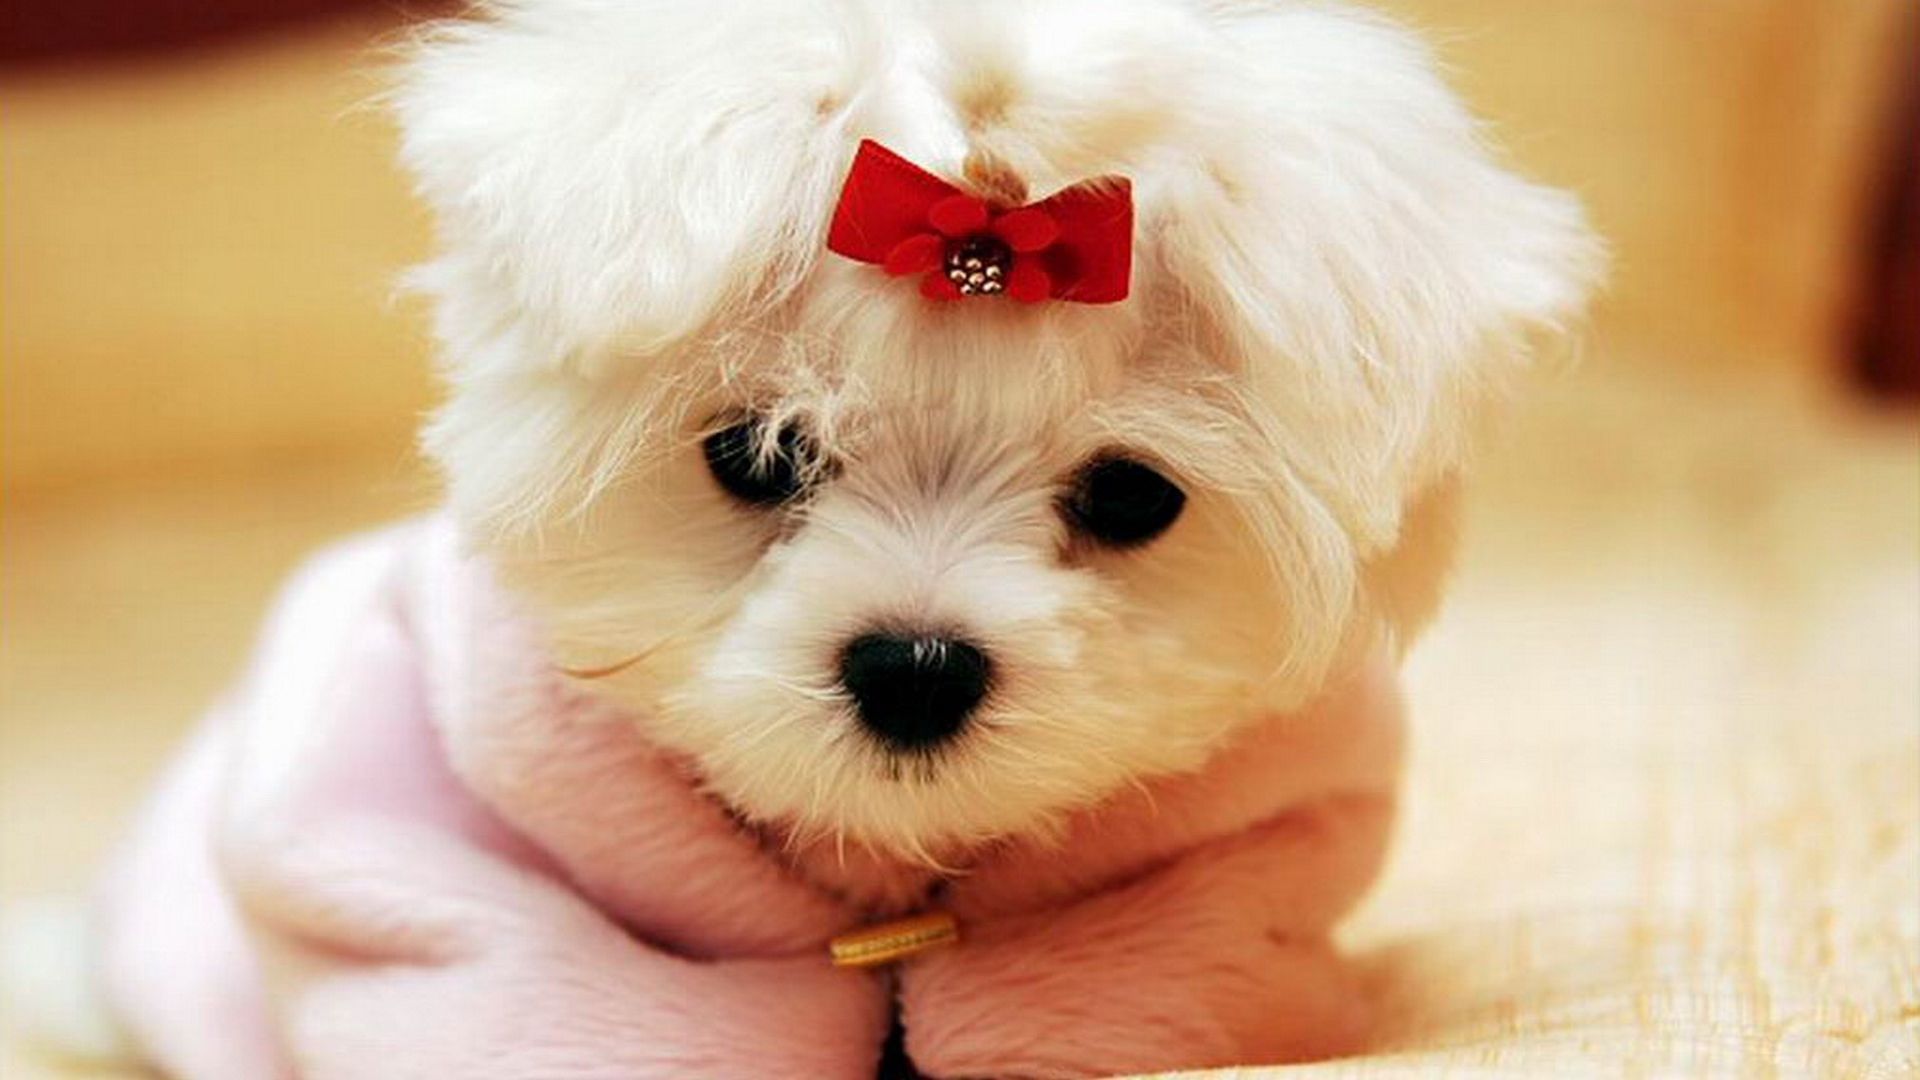 بهترین عکس سگ سفید کوچولو با لباس و پاپیون